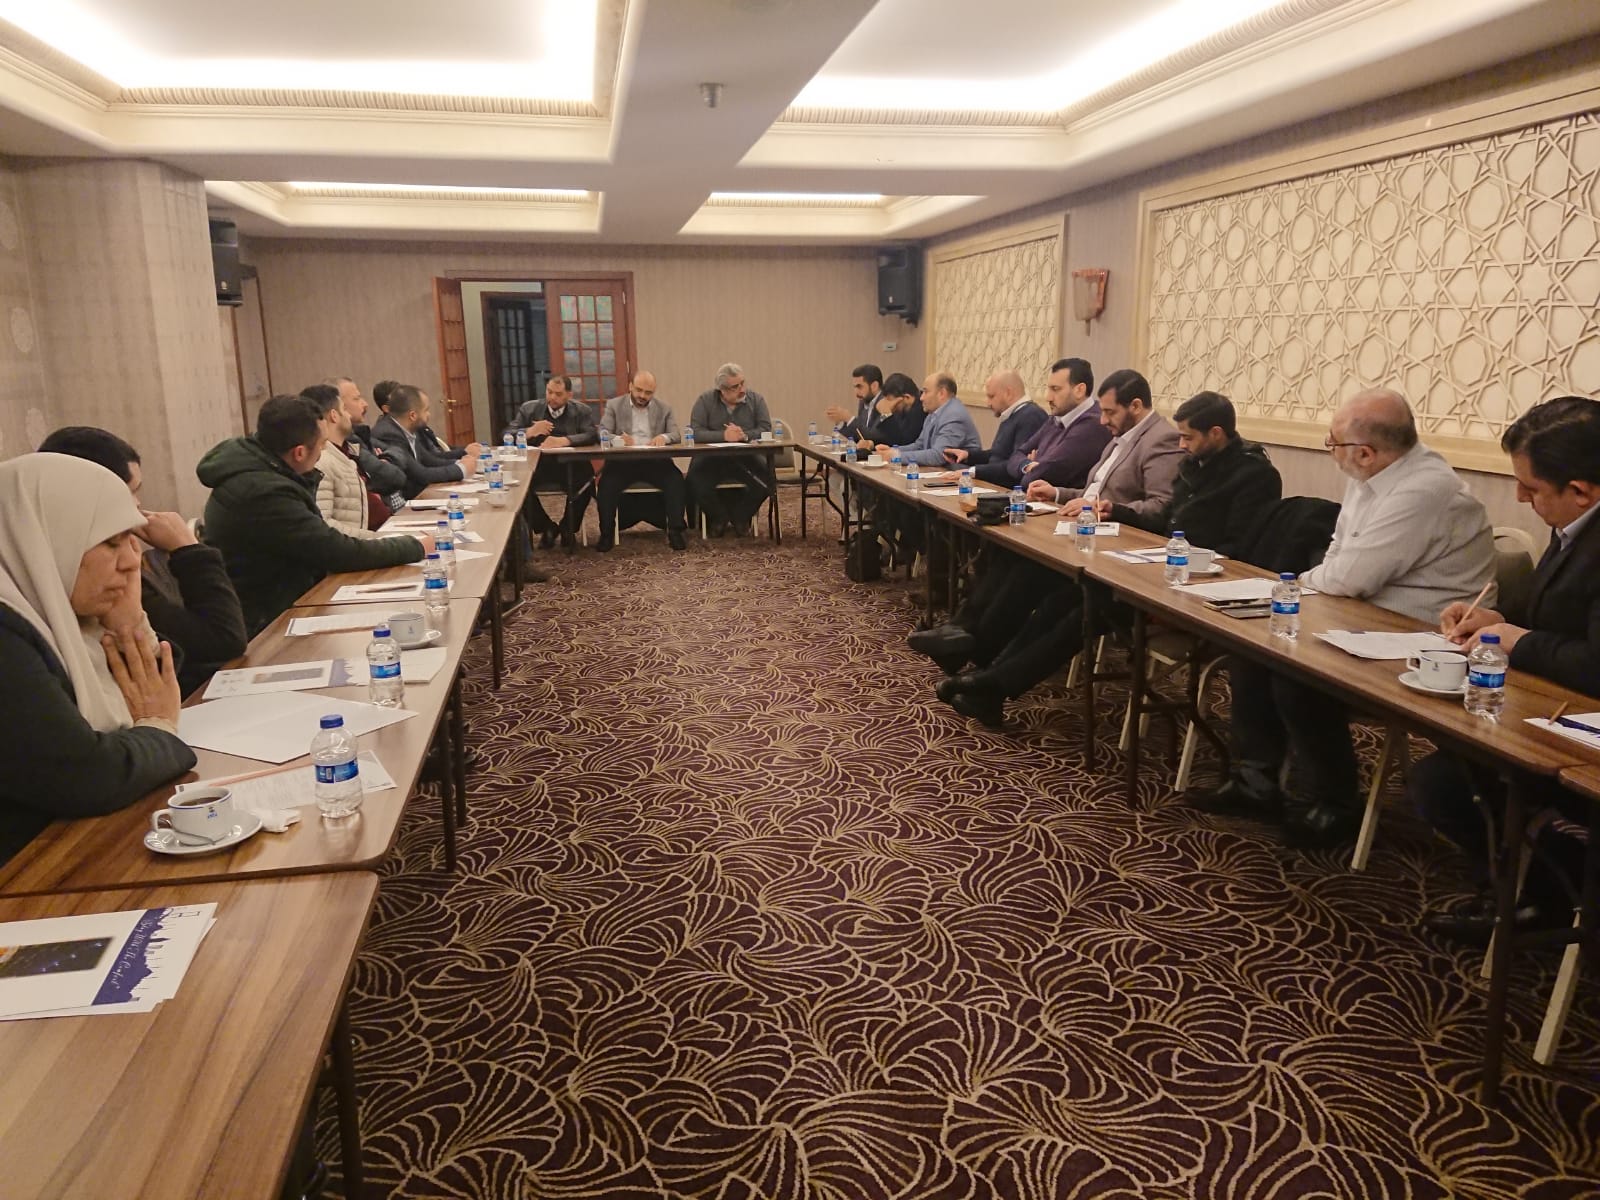 الأمانة العامة لمؤتمر فلسطينيي تركيا تعقد اجتماعها الرابع وتقرر عقد المؤتمر الثاني في 13 نيسان إبريل القادم